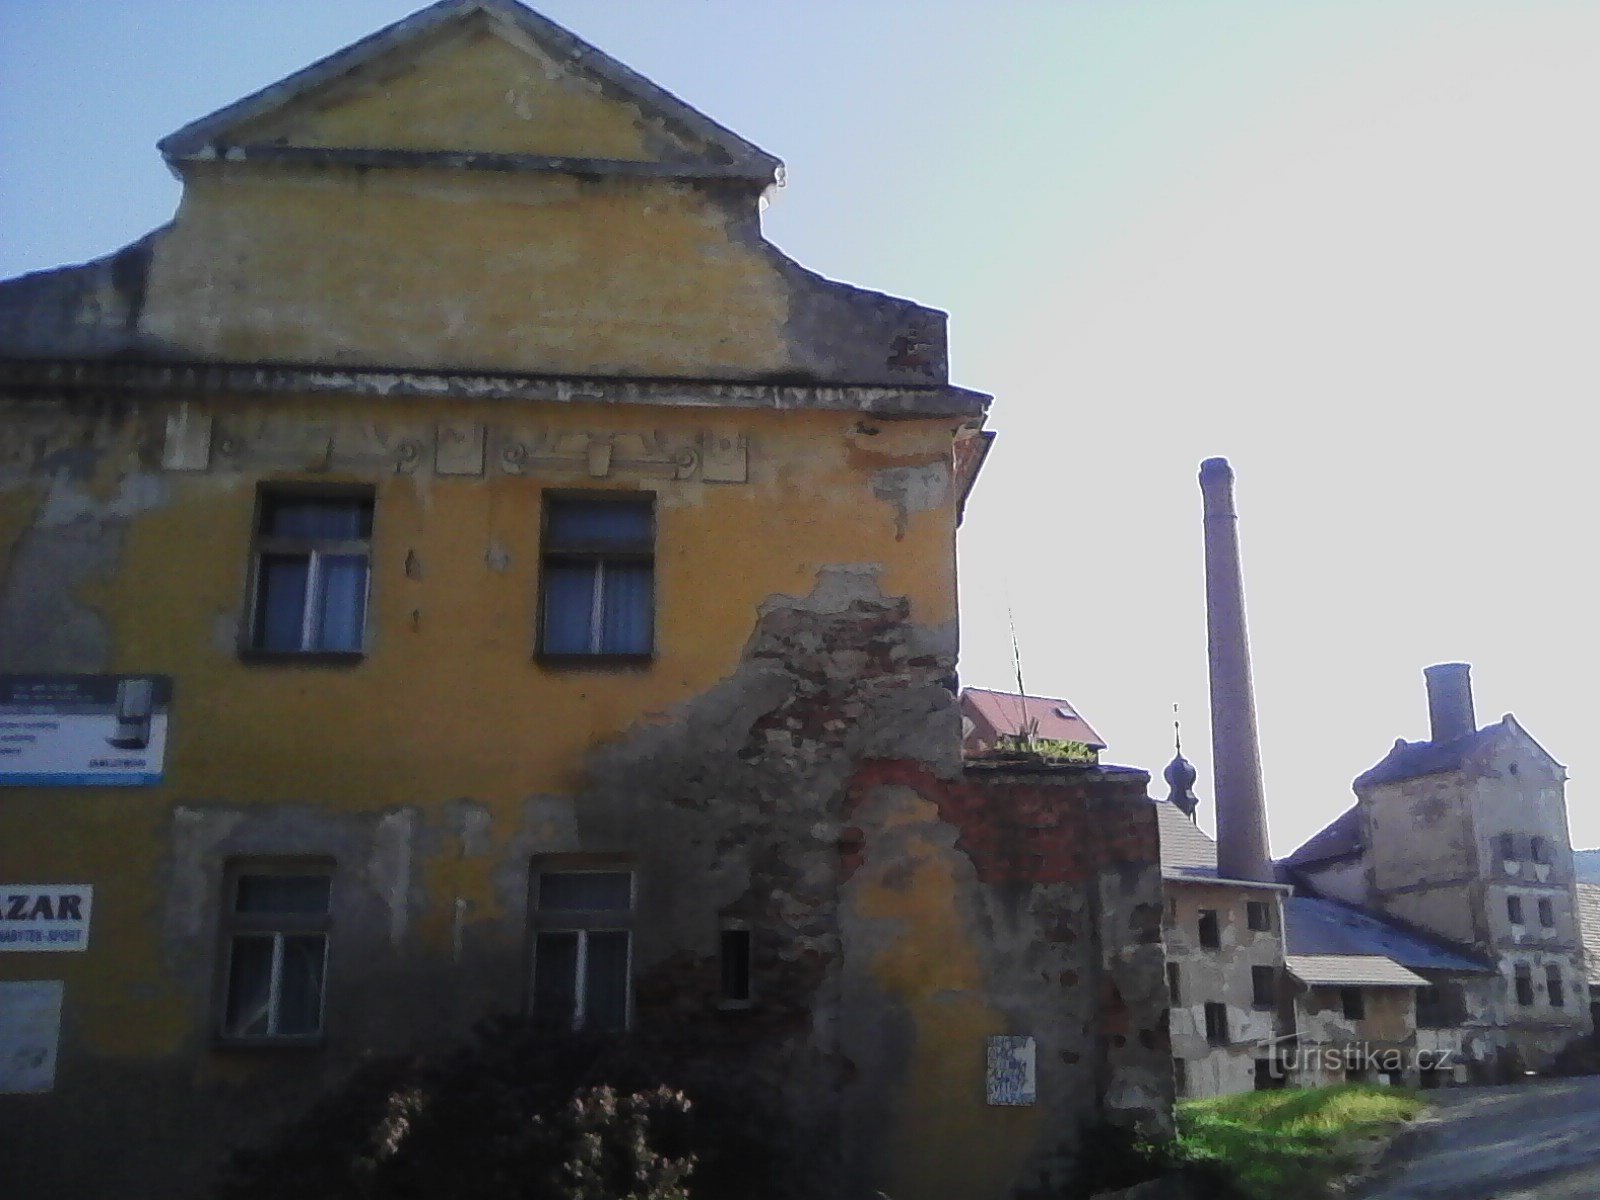 2. Старый замок Вотице. Крепость 15 века, первое упоминание в 1542 году.